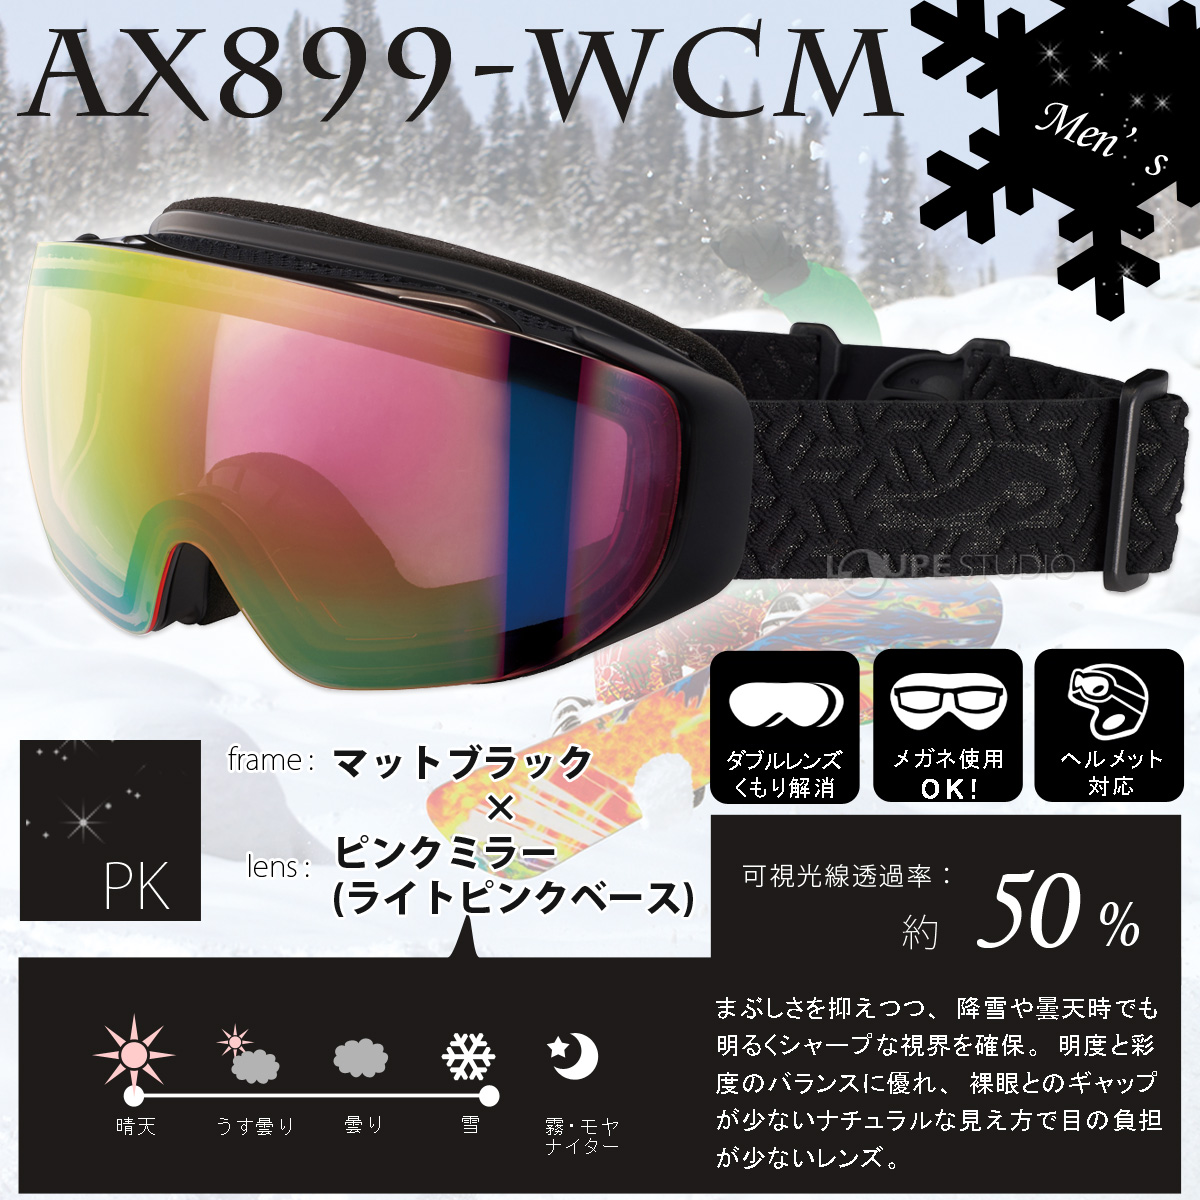 スノーゴーグル 眼鏡対応 ミラー スキー スノーボード AX899-WCM 